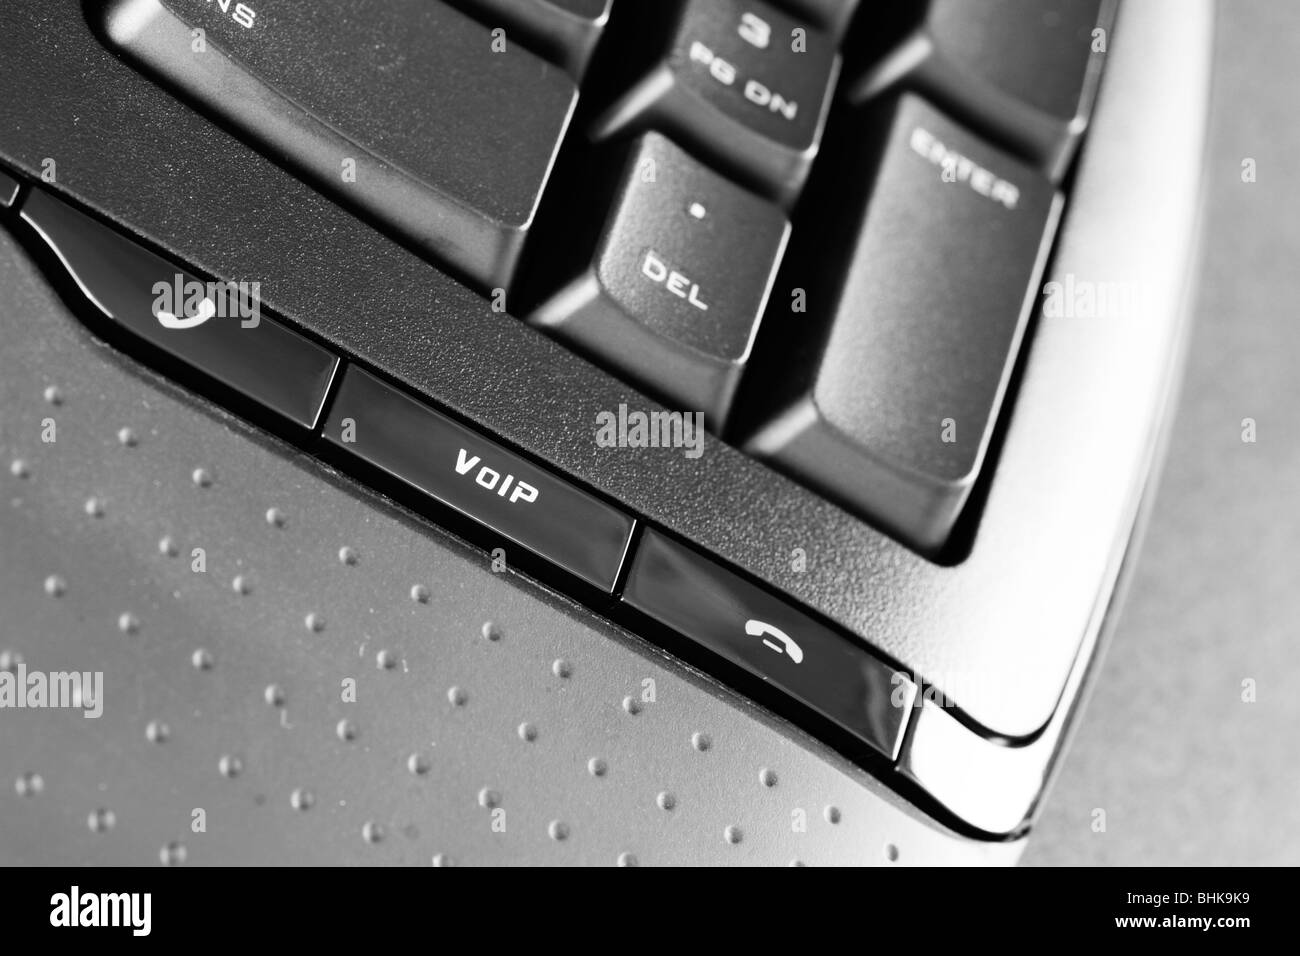 Un clavier d'ordinateur avec touches VOIP Banque D'Images